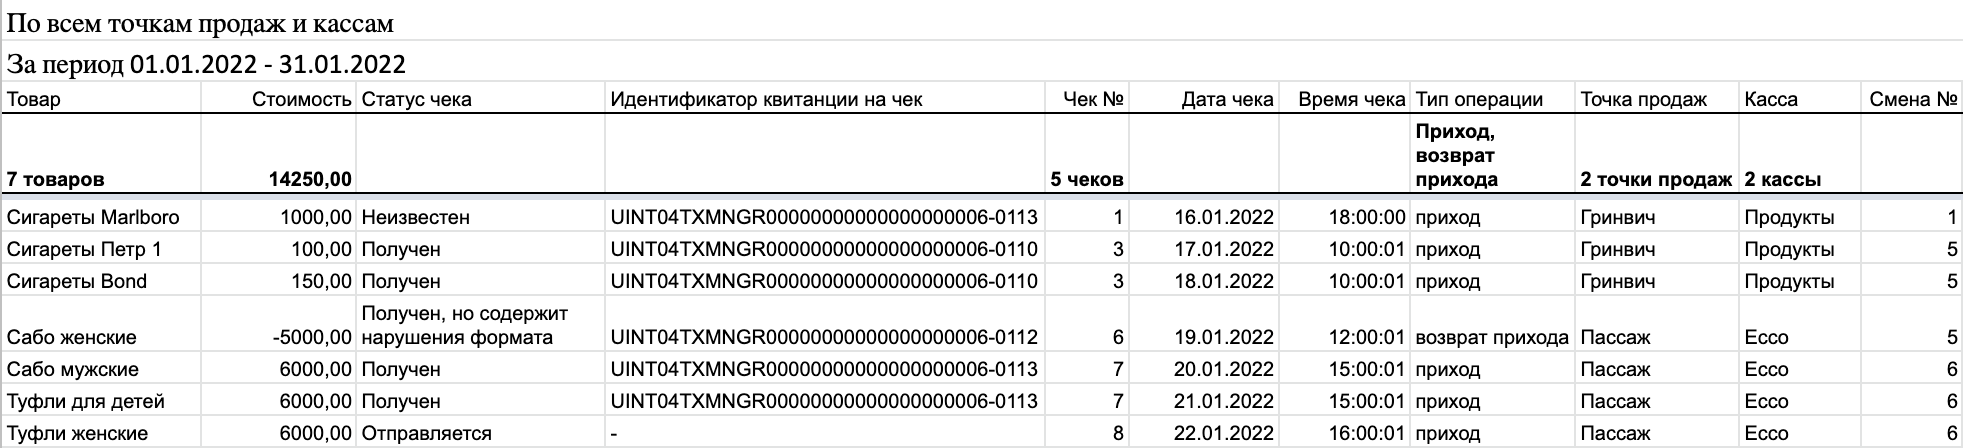 Отчет по данным в форматах 1.05 и 1.1